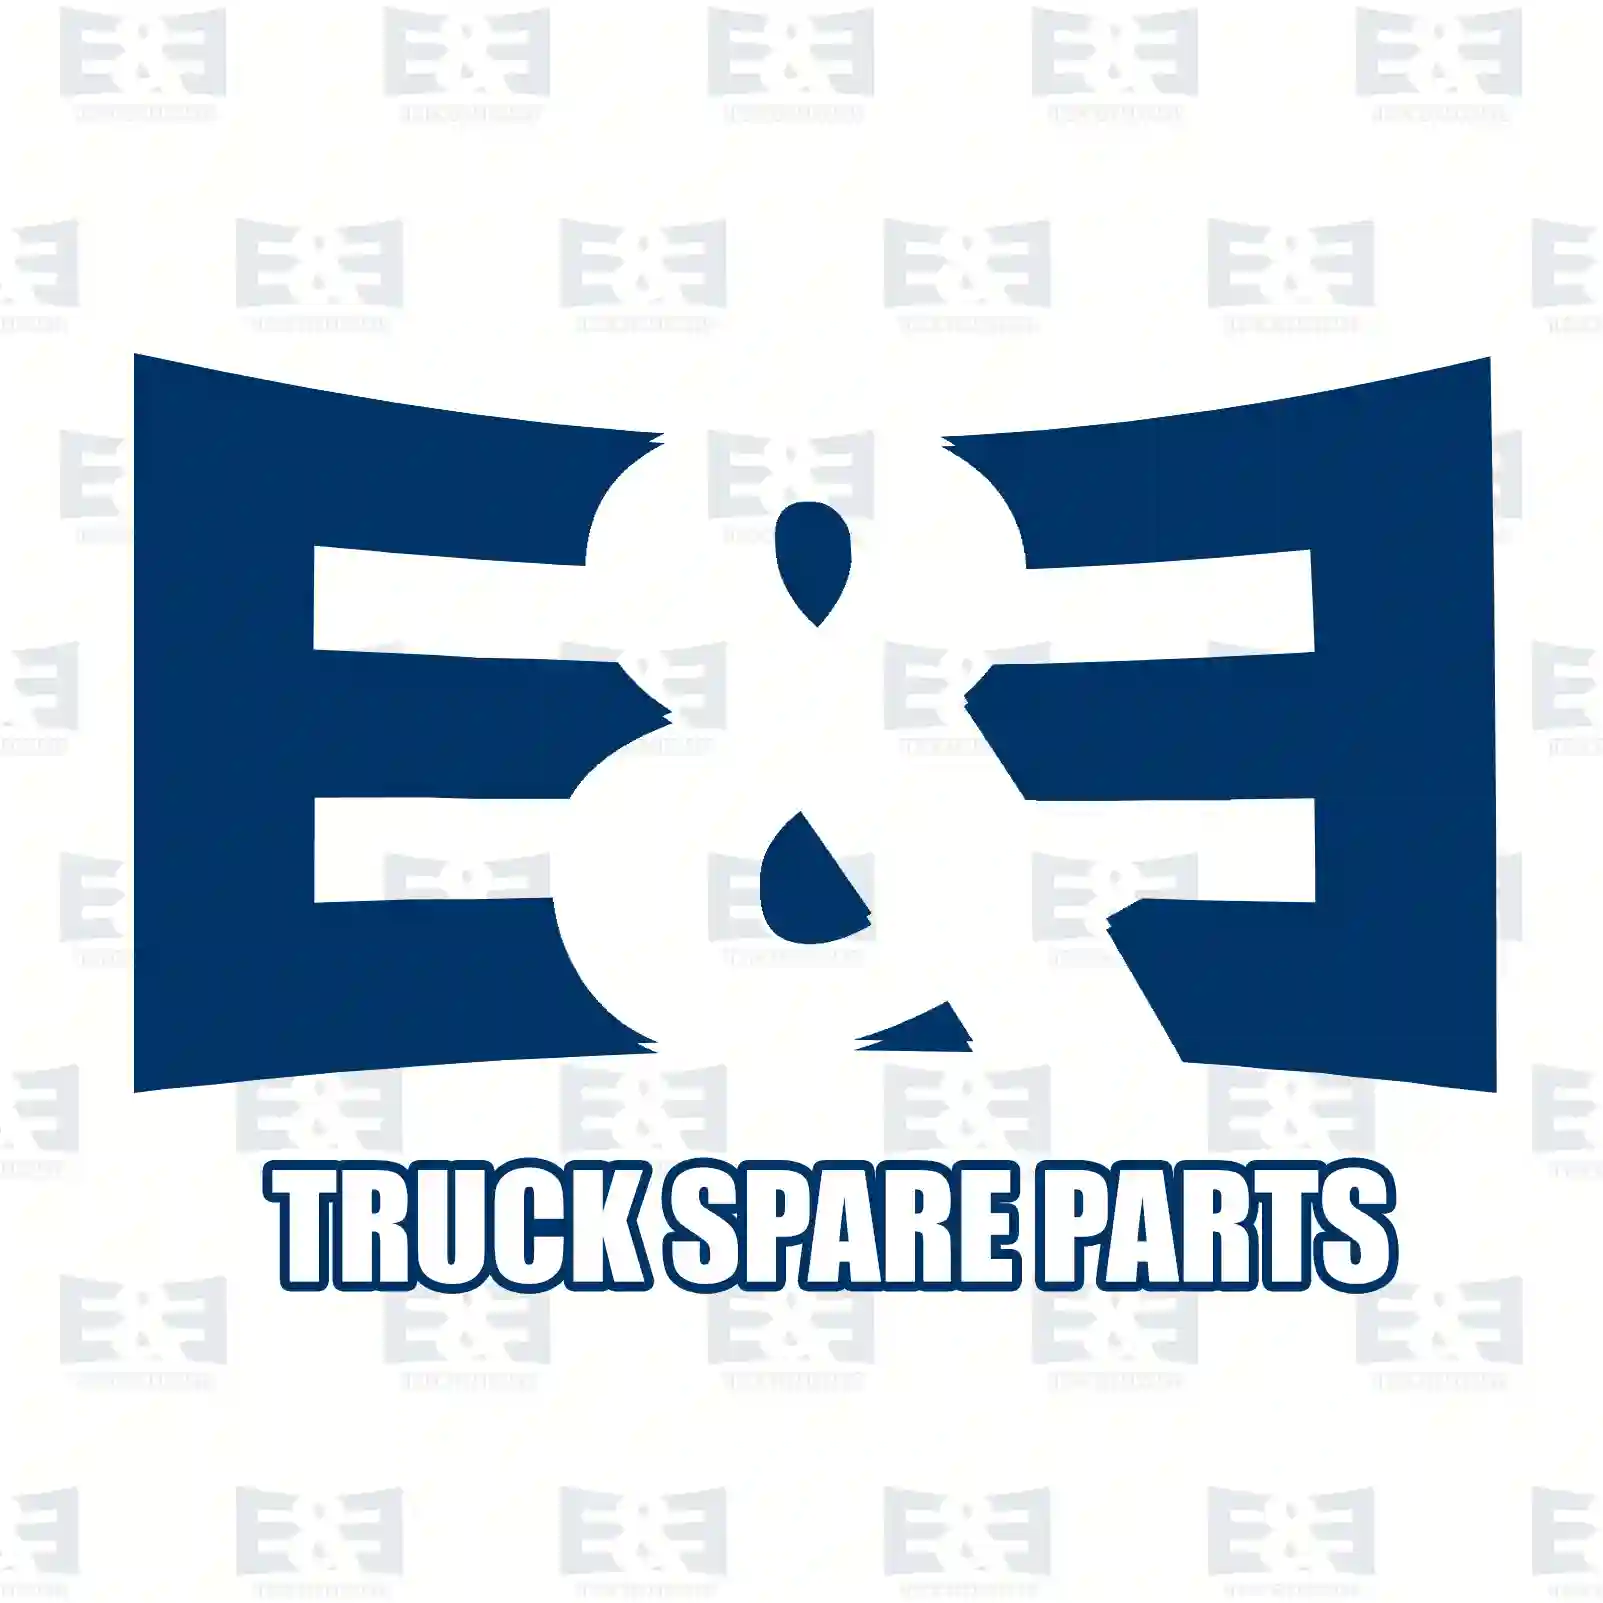 Stabilizer stay, right, 2E2283185, 6283200289, 6283201189, ||  2E2283185 E&E Truck Spare Parts | Truck Spare Parts, Auotomotive Spare Parts Stabilizer stay, right, 2E2283185, 6283200289, 6283201189, ||  2E2283185 E&E Truck Spare Parts | Truck Spare Parts, Auotomotive Spare Parts